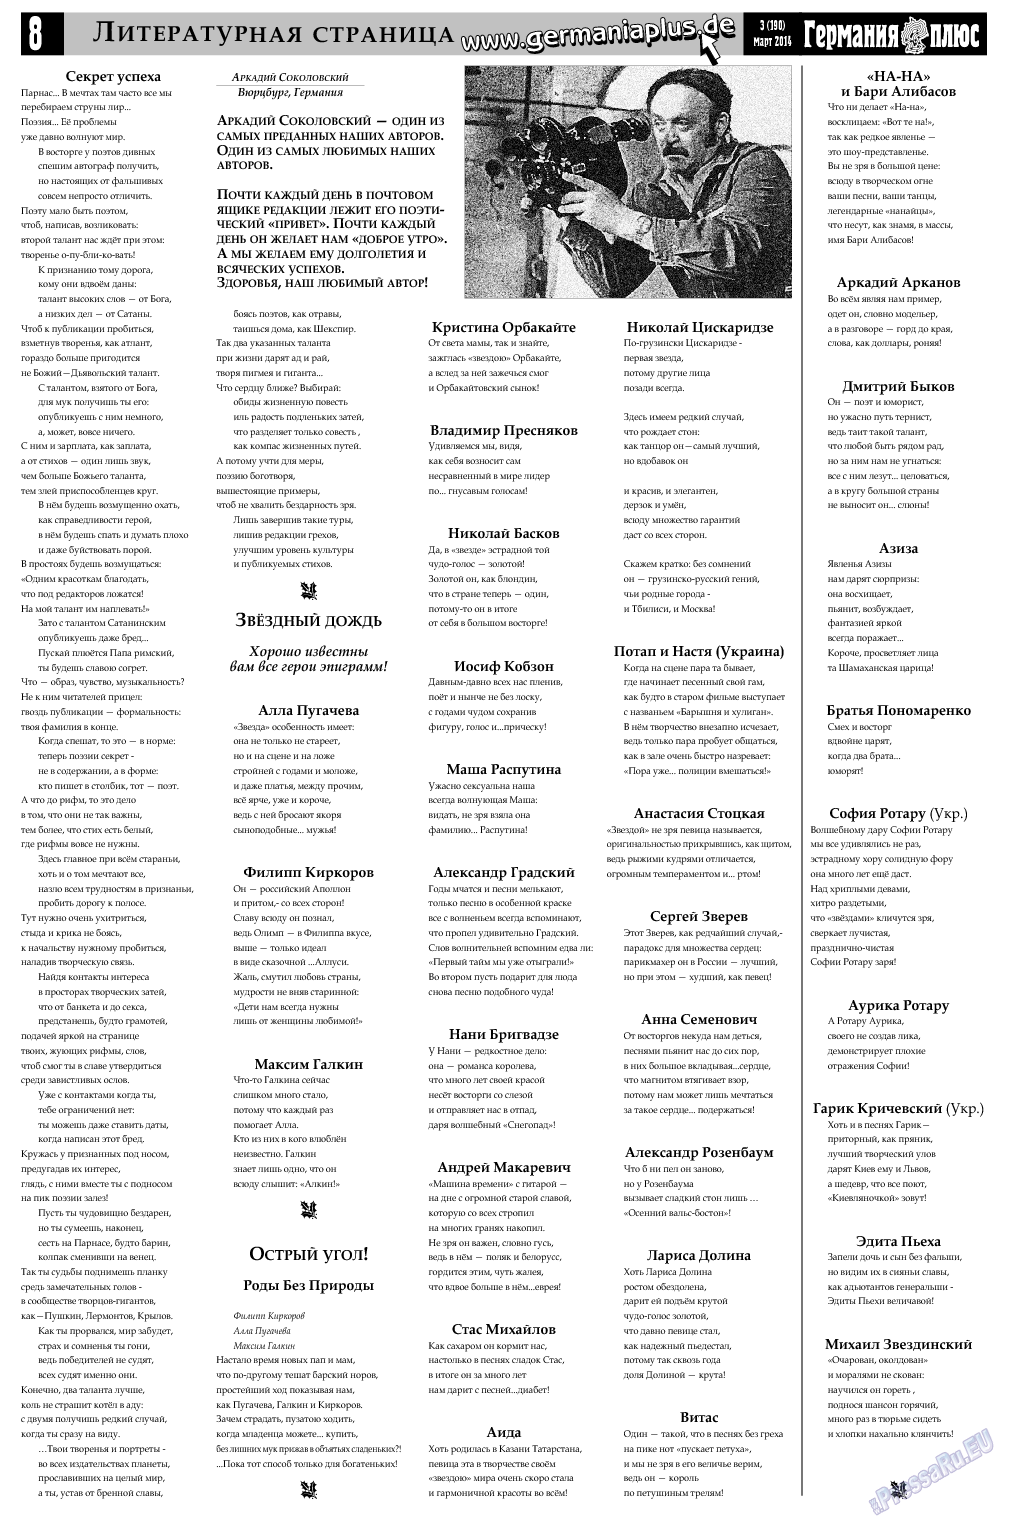 Германия плюс (газета). 2014 год, номер 3, стр. 8